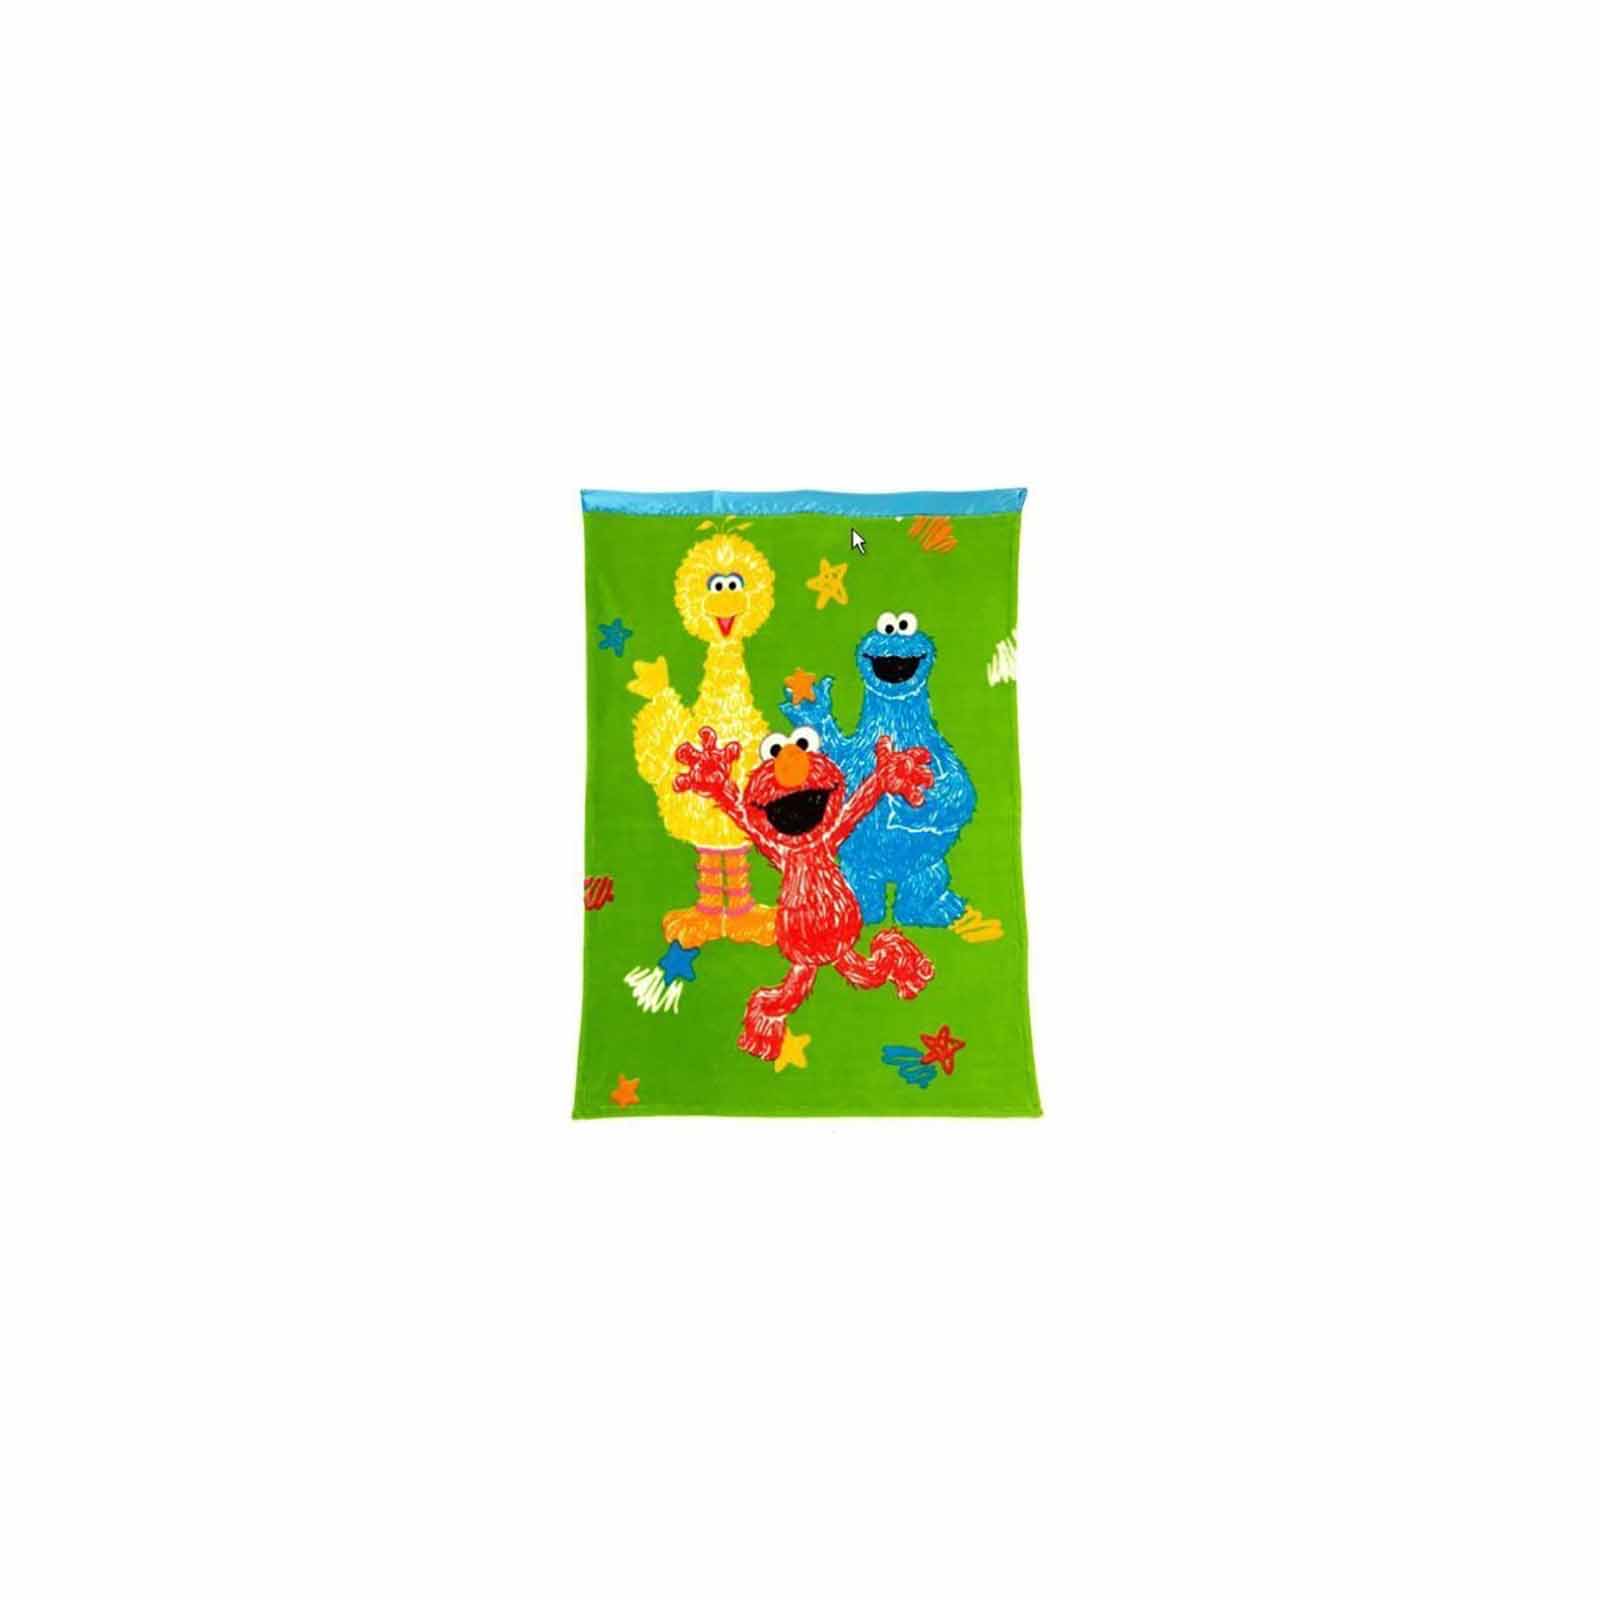 Sesame Street Elmo & Friends Toddler Blanket